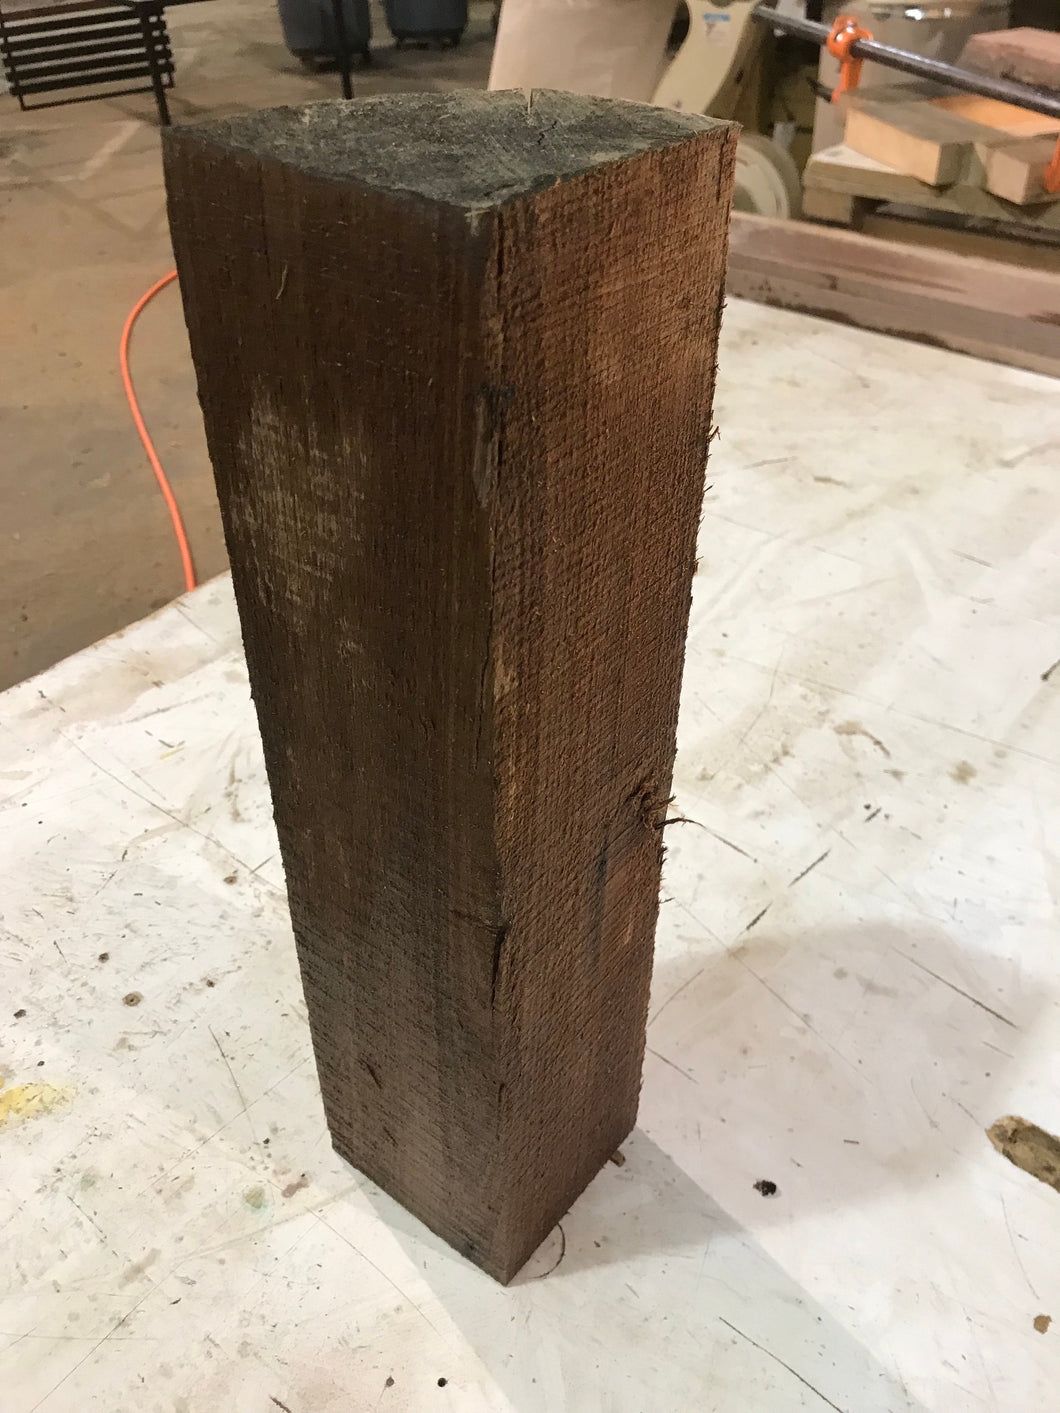 Walnut 4x4 for wood turning on Lathe